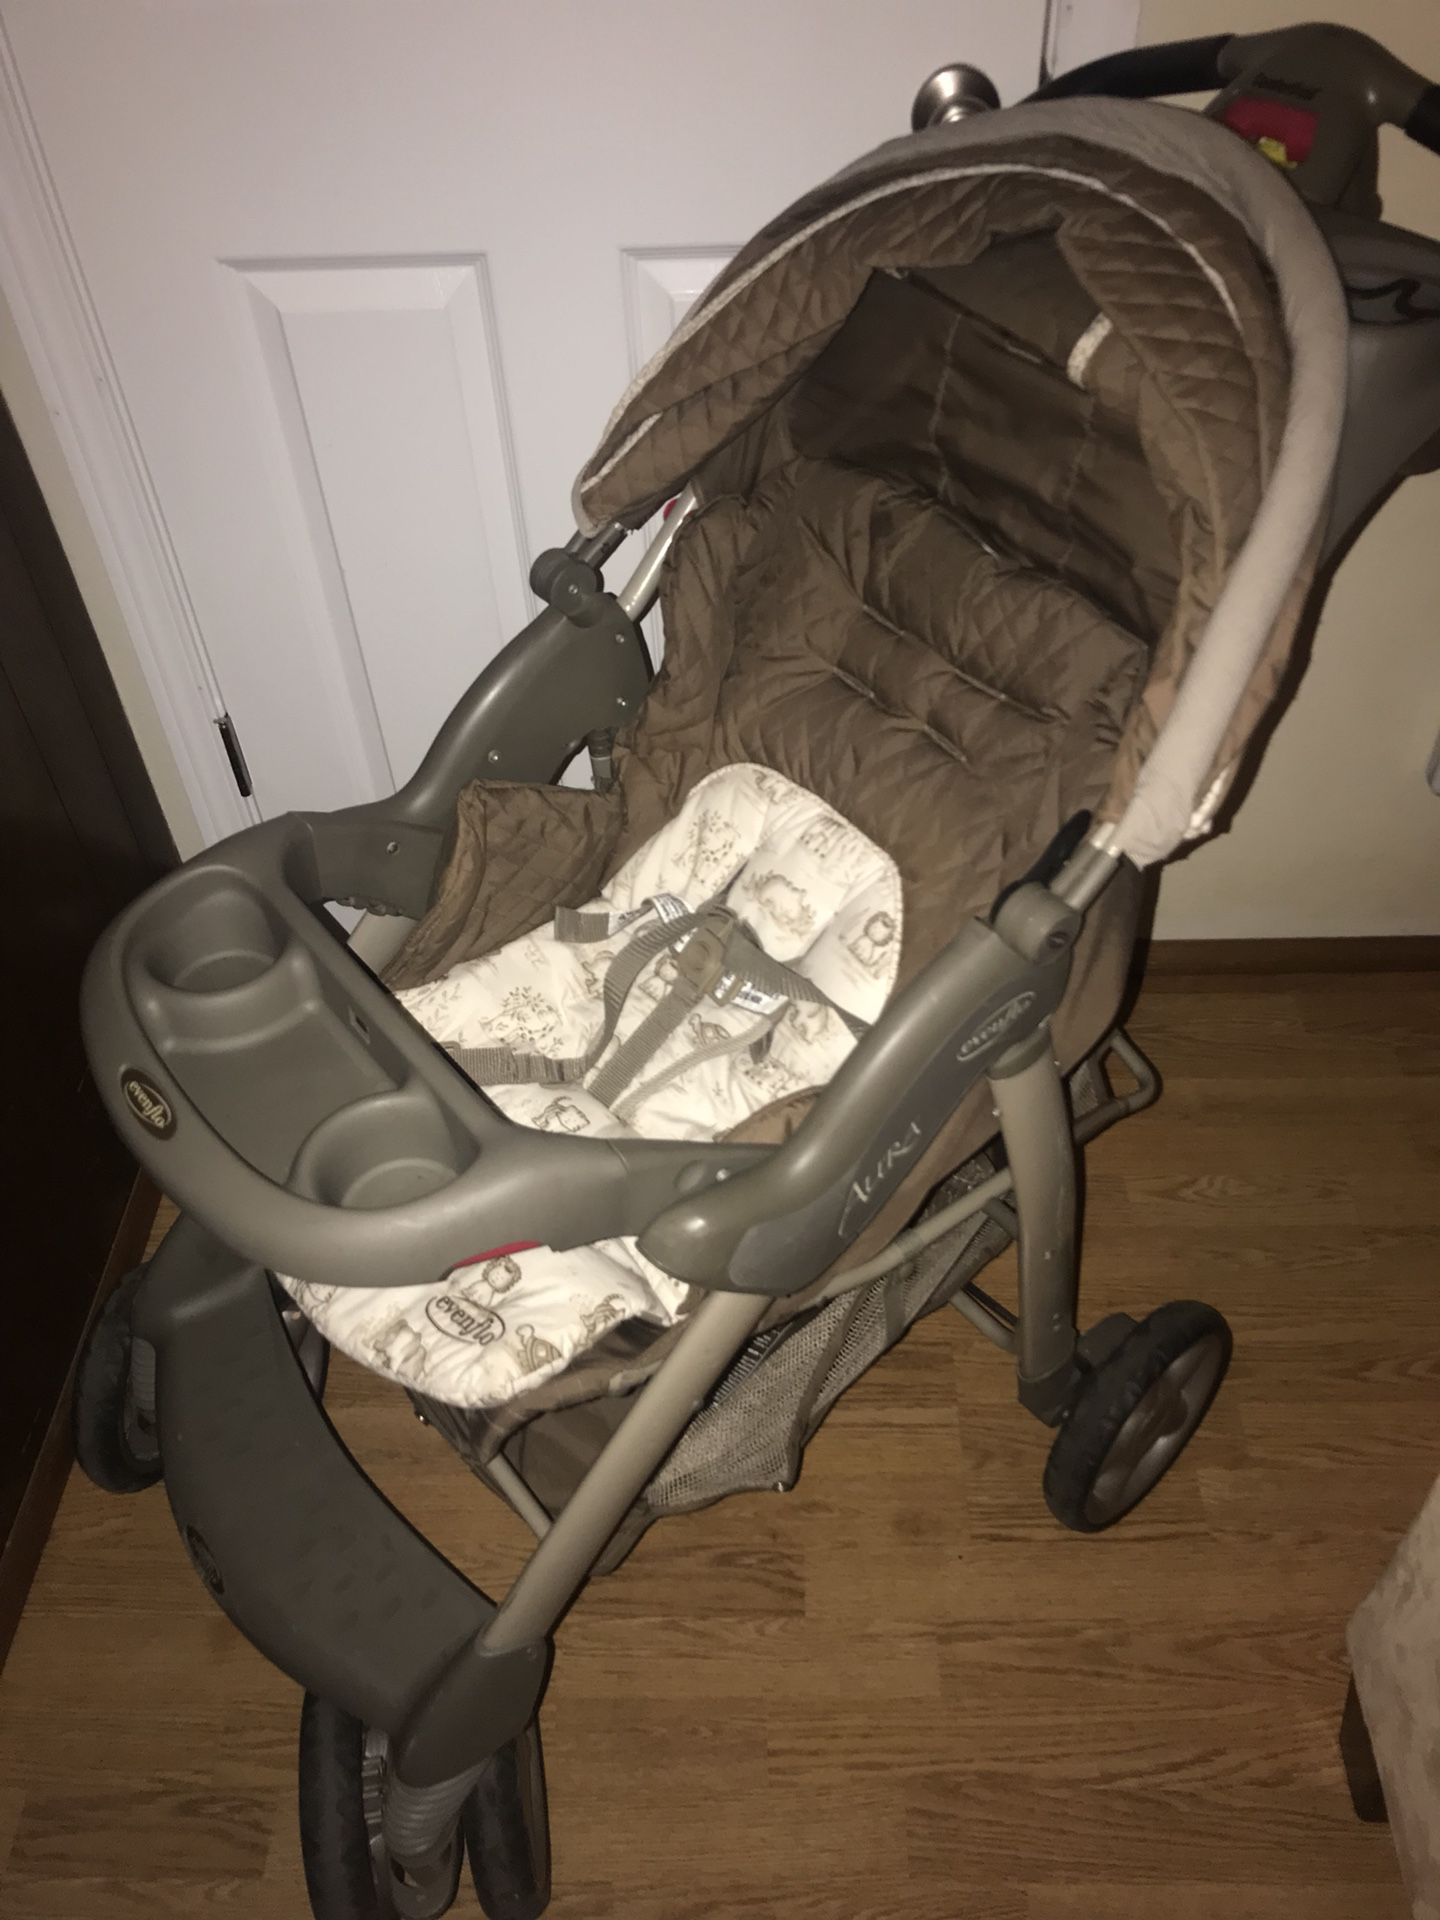 Evenflo baby stroller